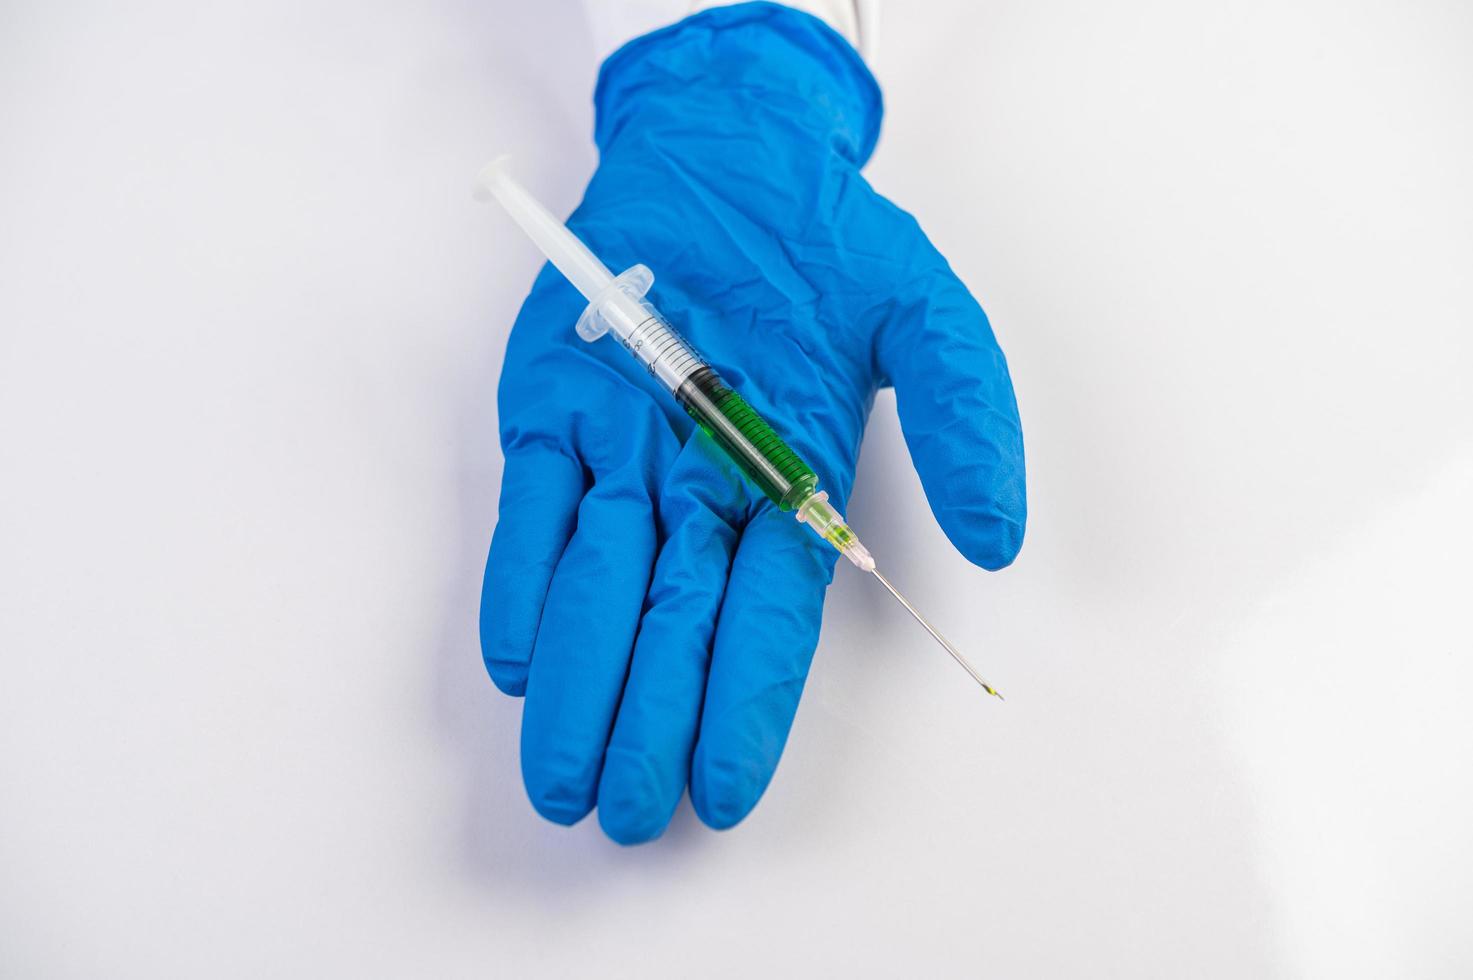 wetenschapper die handschoenen draagt die een spuit met een vaccin vasthouden om covid-19 te voorkomen foto